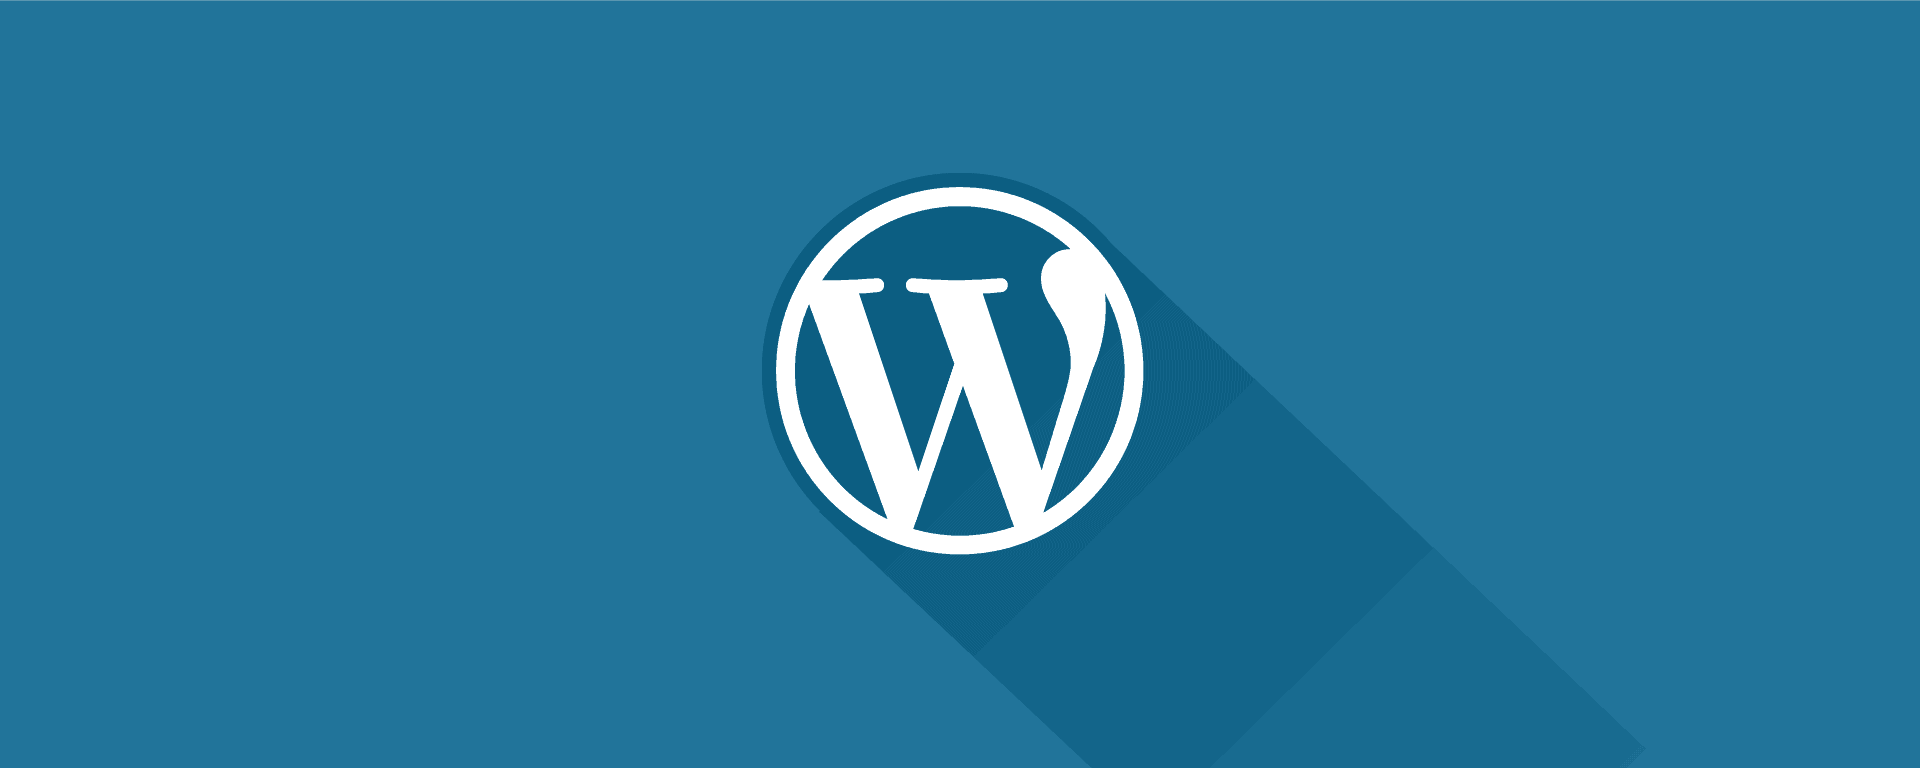 WordPress : résoudre l'erreur 